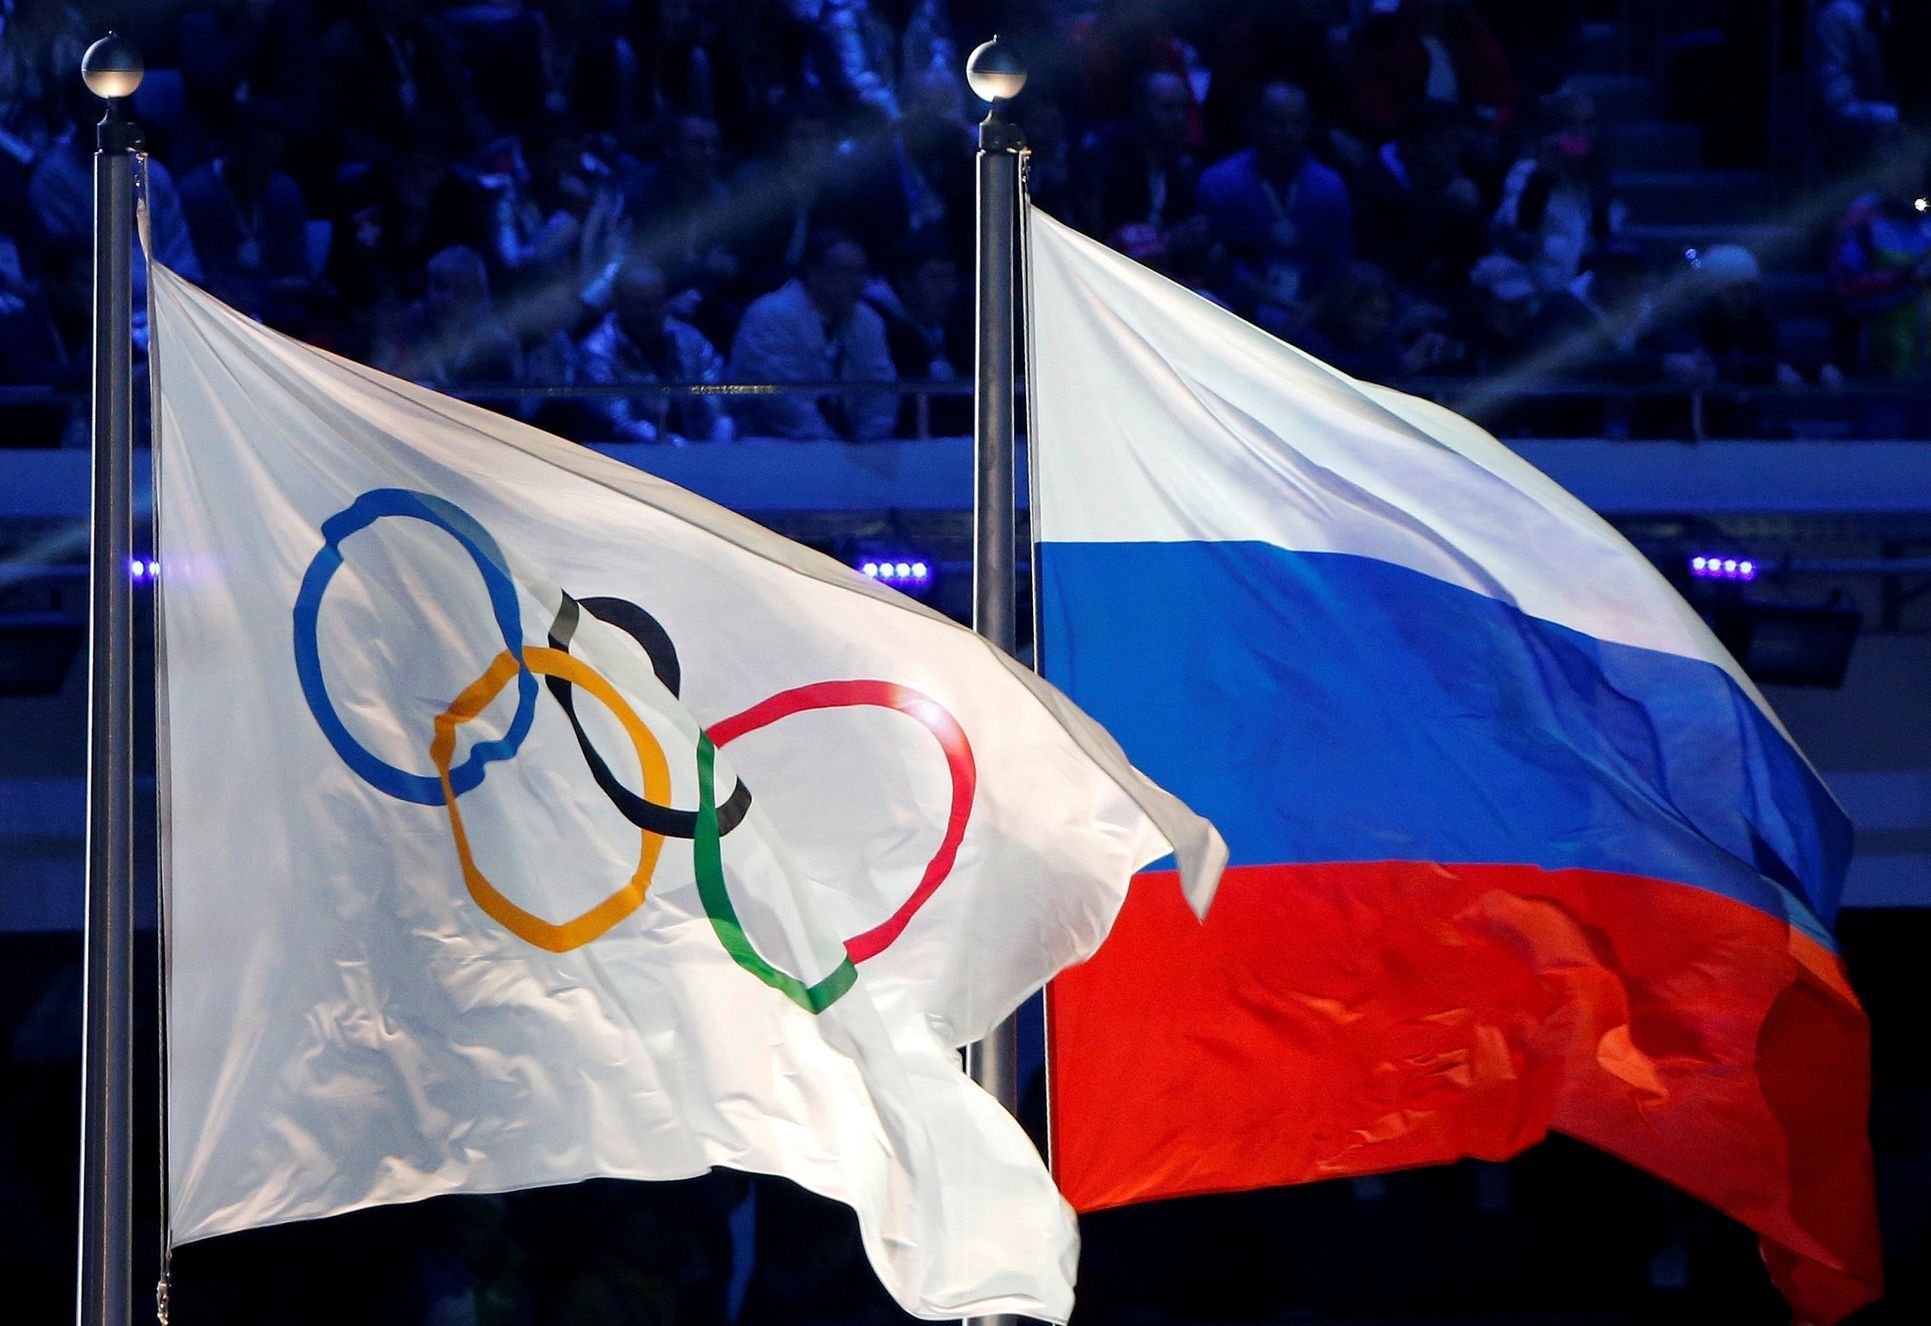 olympijské hry 2014, Soči, Rusko, vlajka